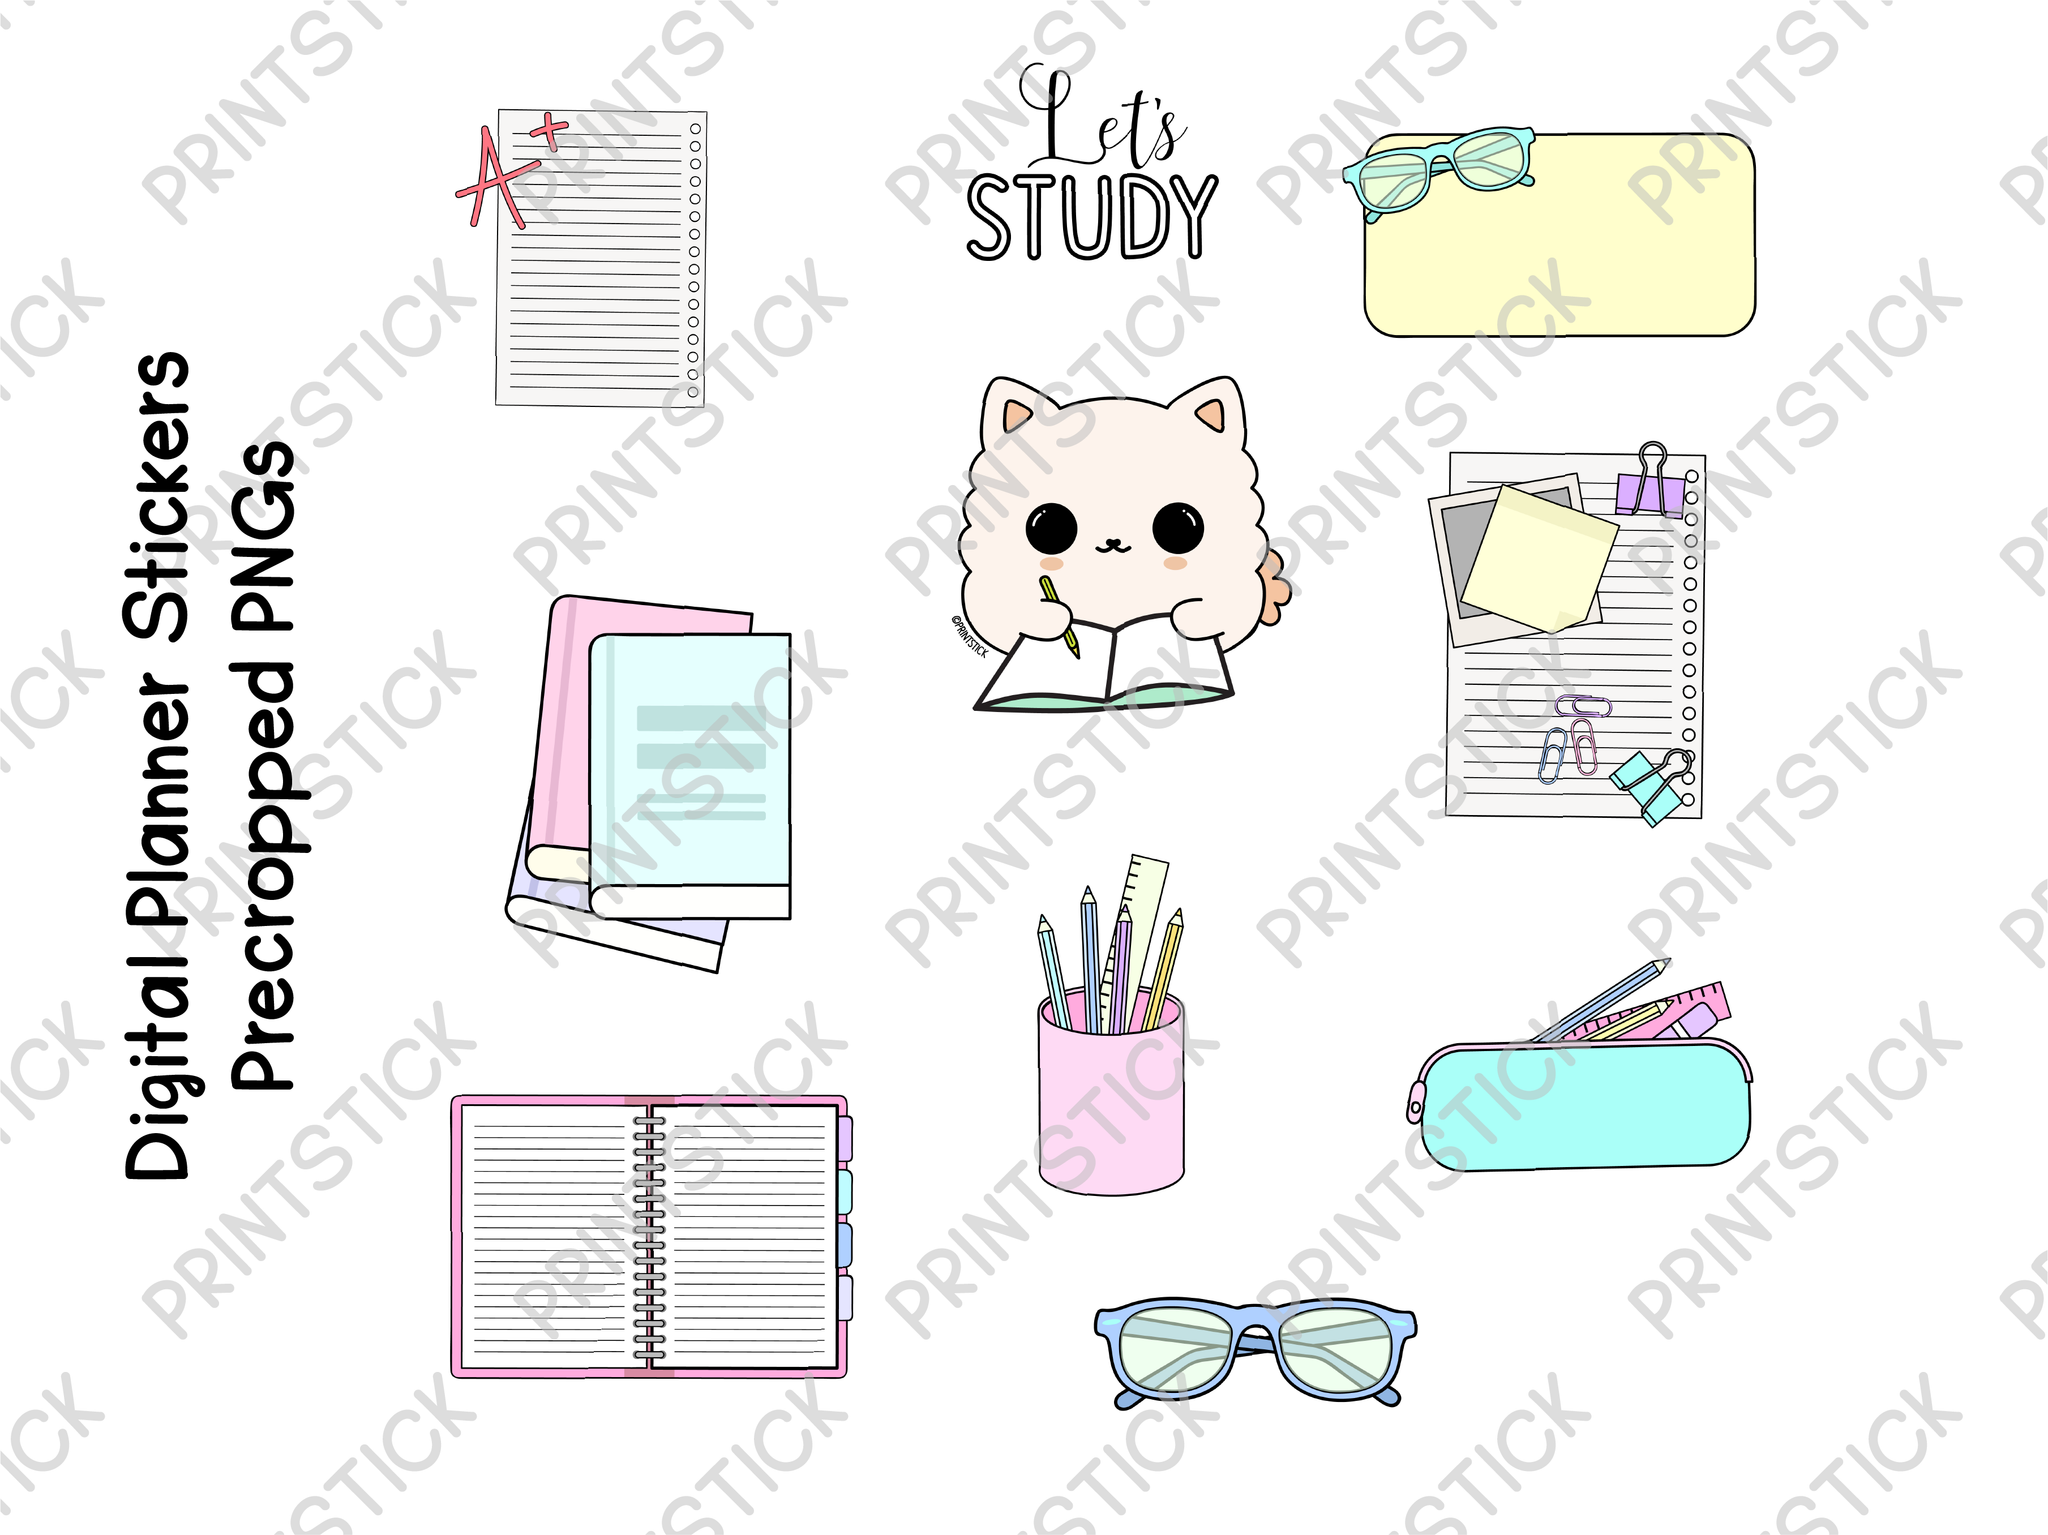 SS - Triana: Let's Study - Stickers - PrintStick